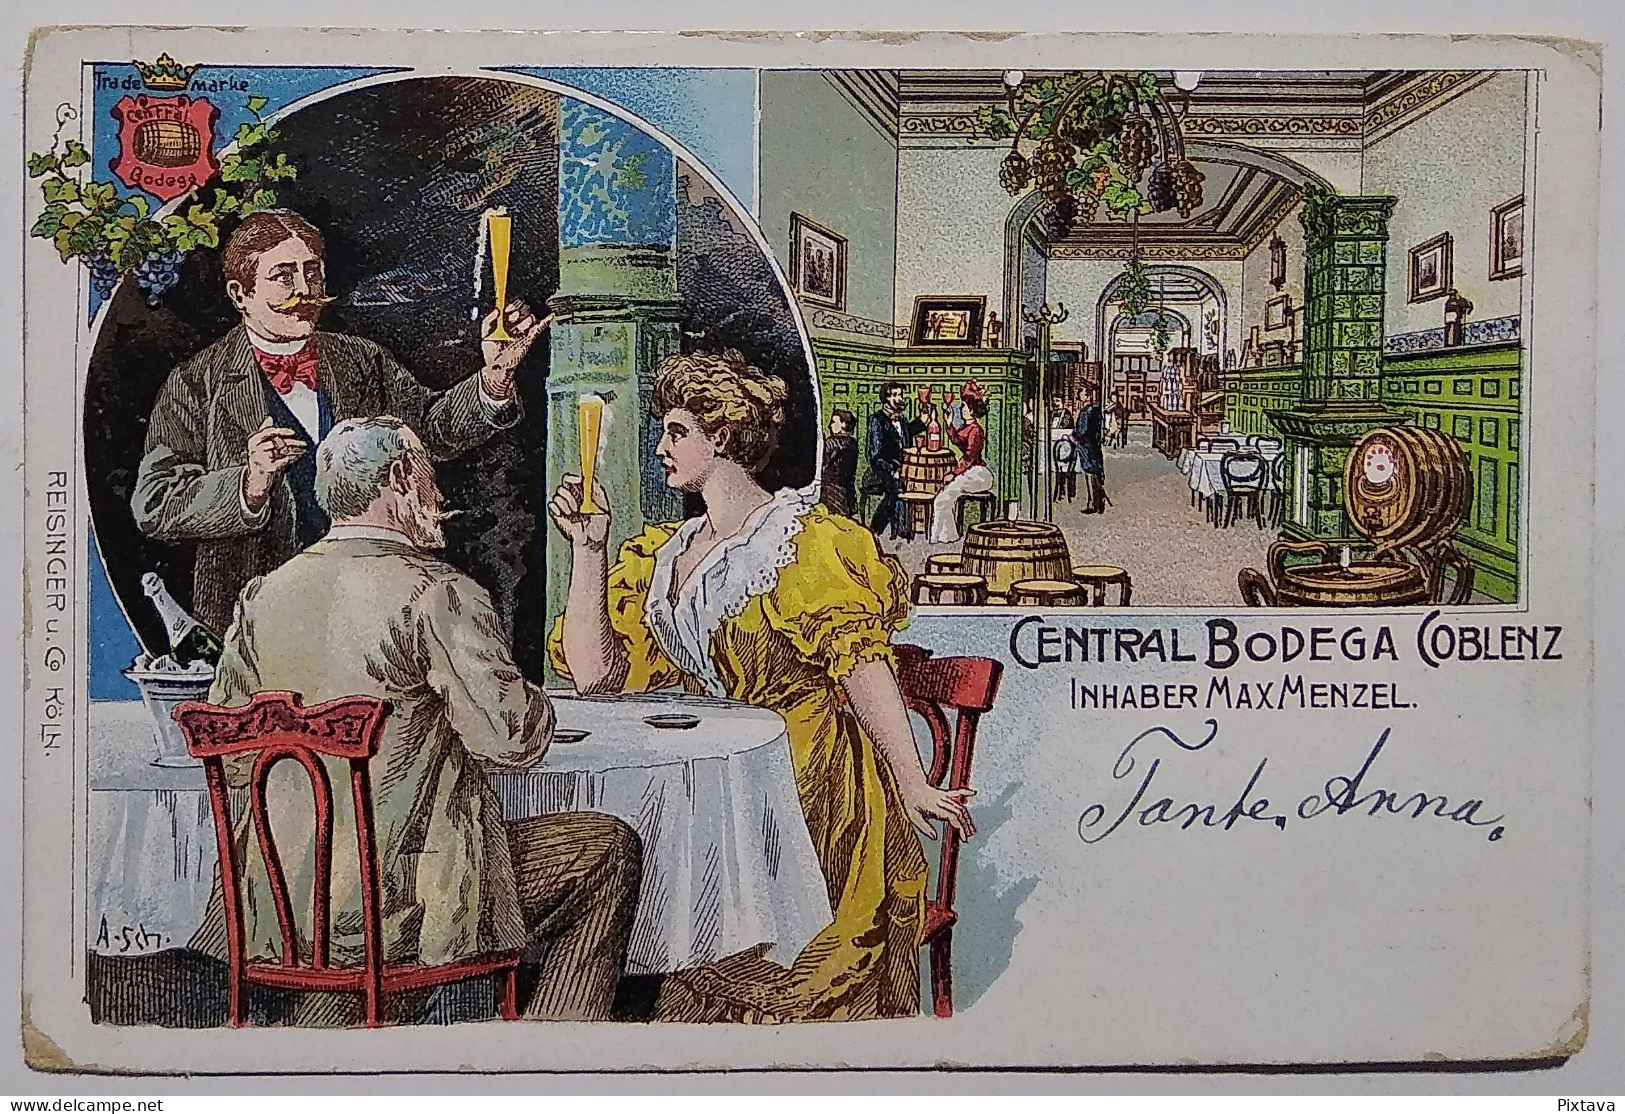 Germany / Central Bodega Coblenz / Inhaber Max Menzel / 1905 / Restaurant / Litho - A Identificar